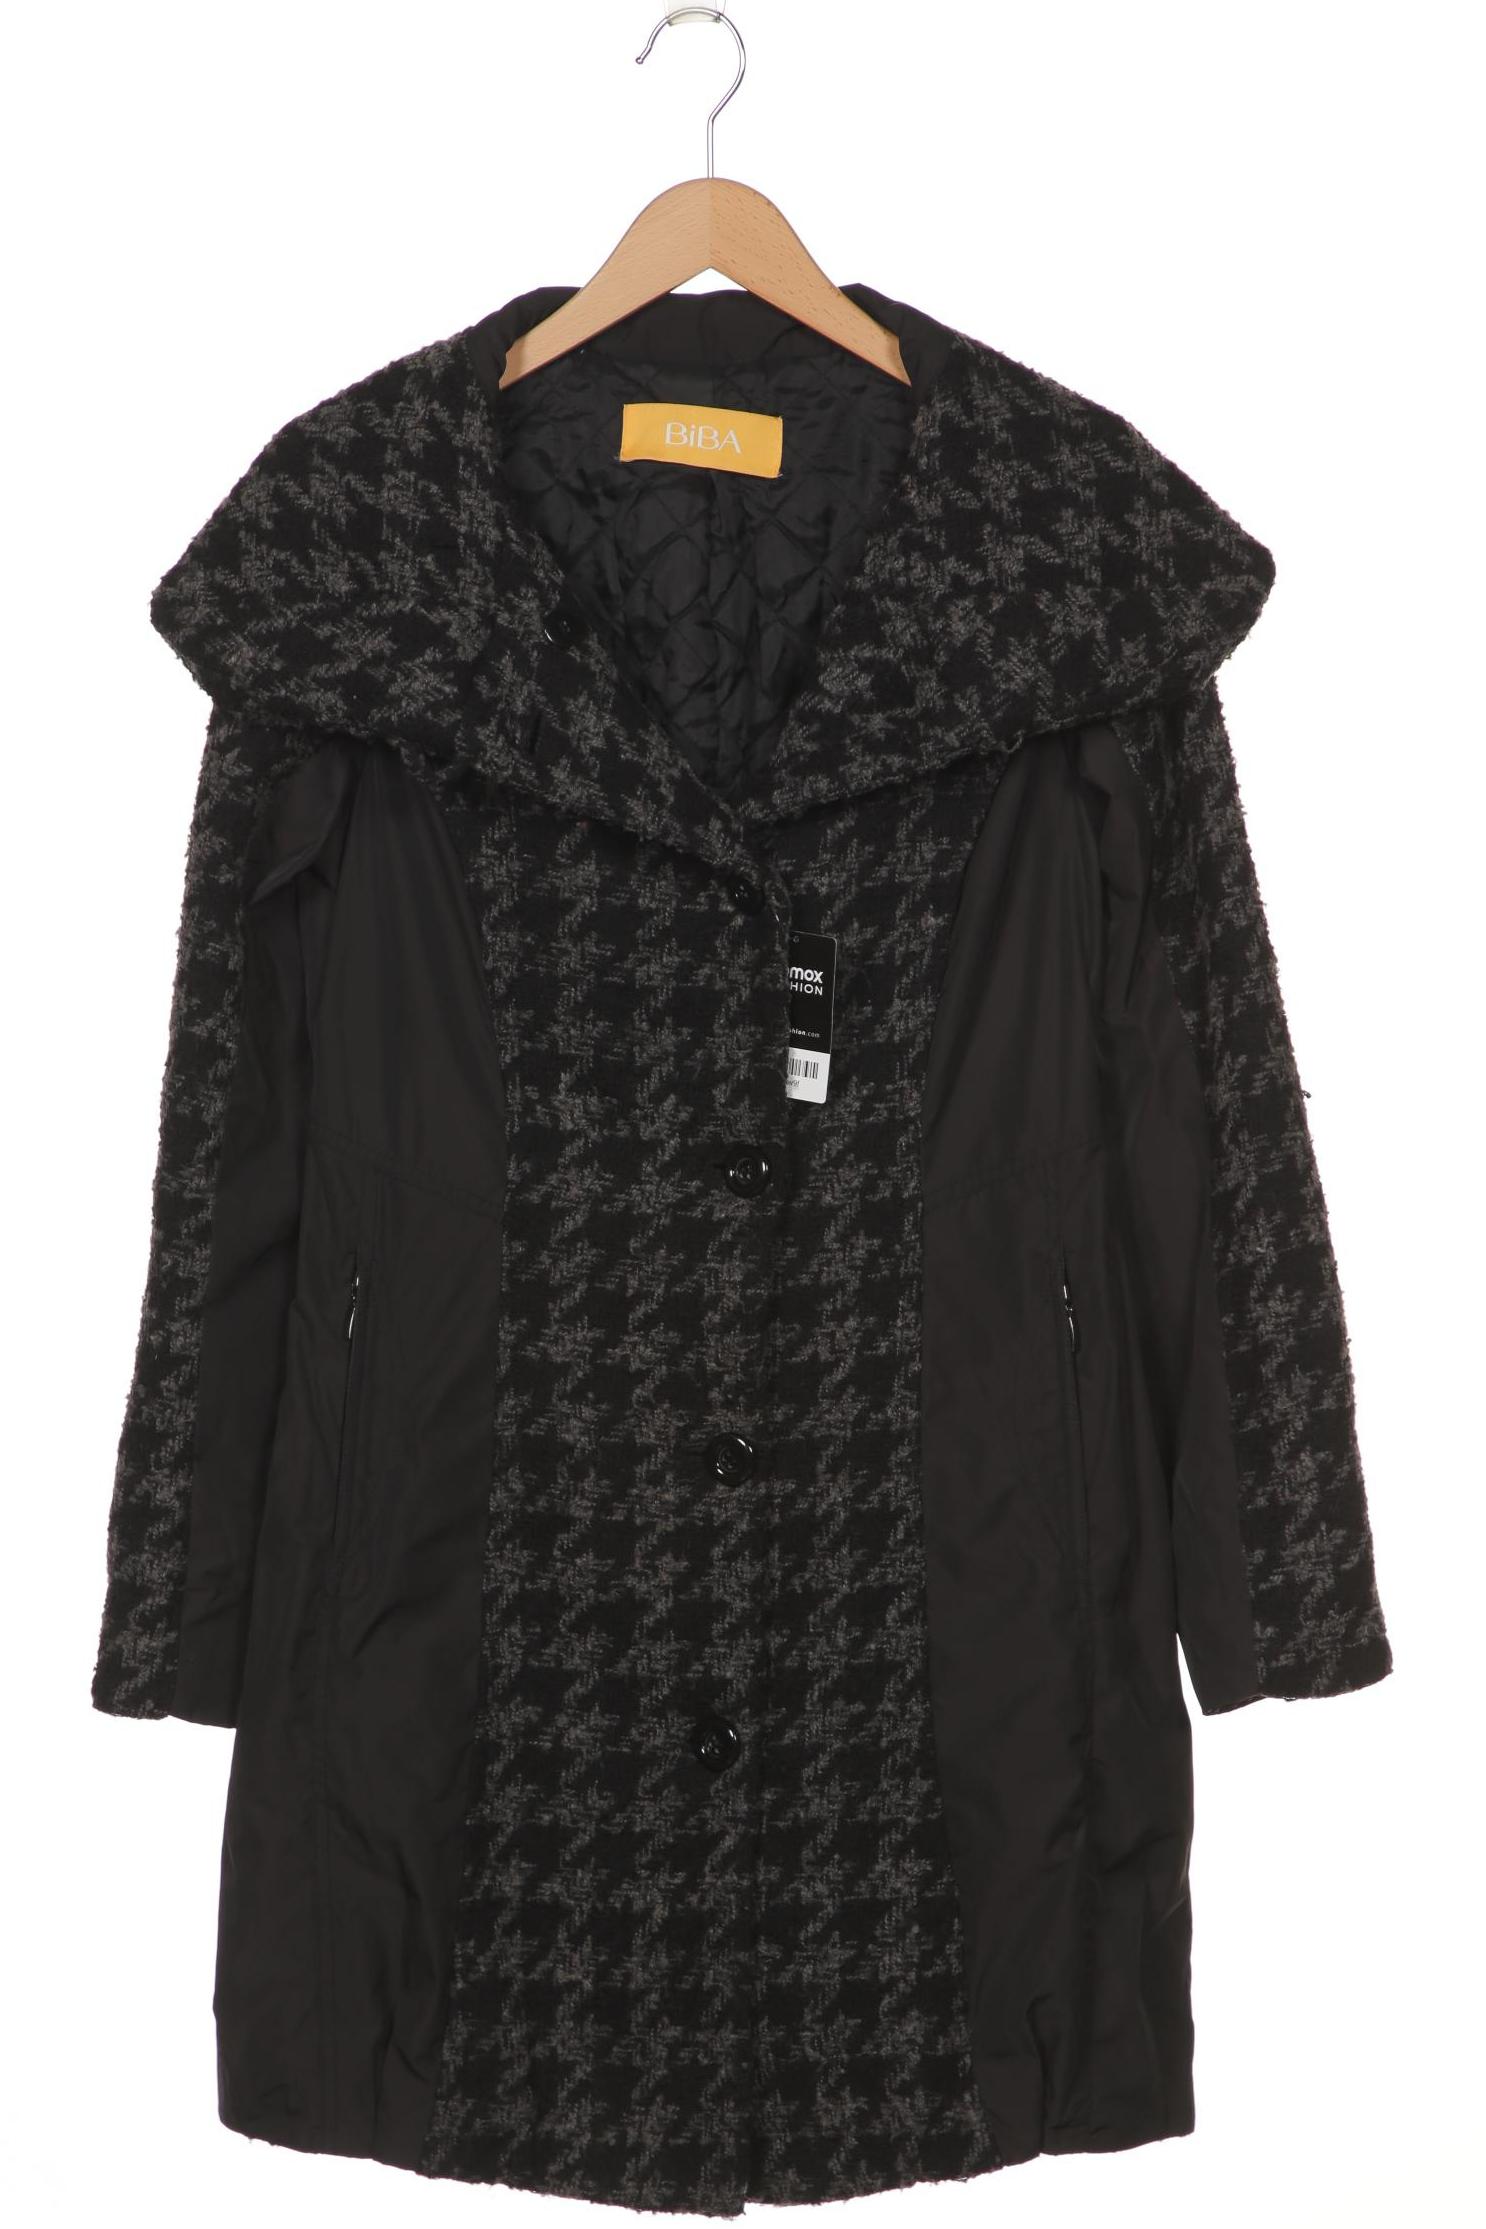 BiBA Damen Mantel, schwarz, Gr. 36 von BiBA